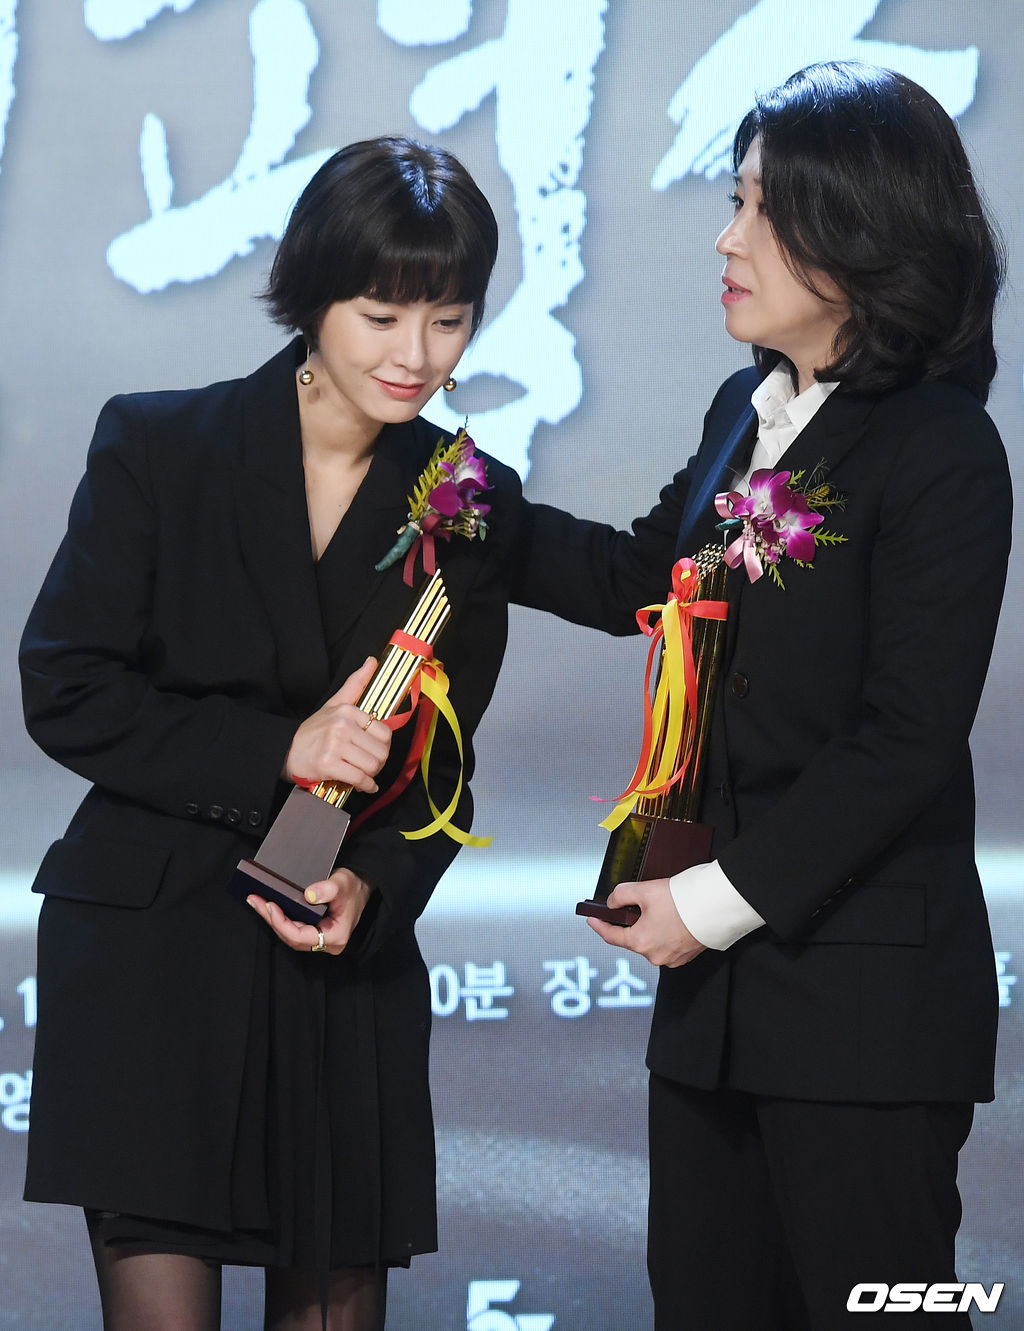 무대 위에서 여우조연상을 수상한 김미경이 여우주연상을 수상한 배우 정유미에게 축하를 건네고 있다. / rumi@osen.co.kr